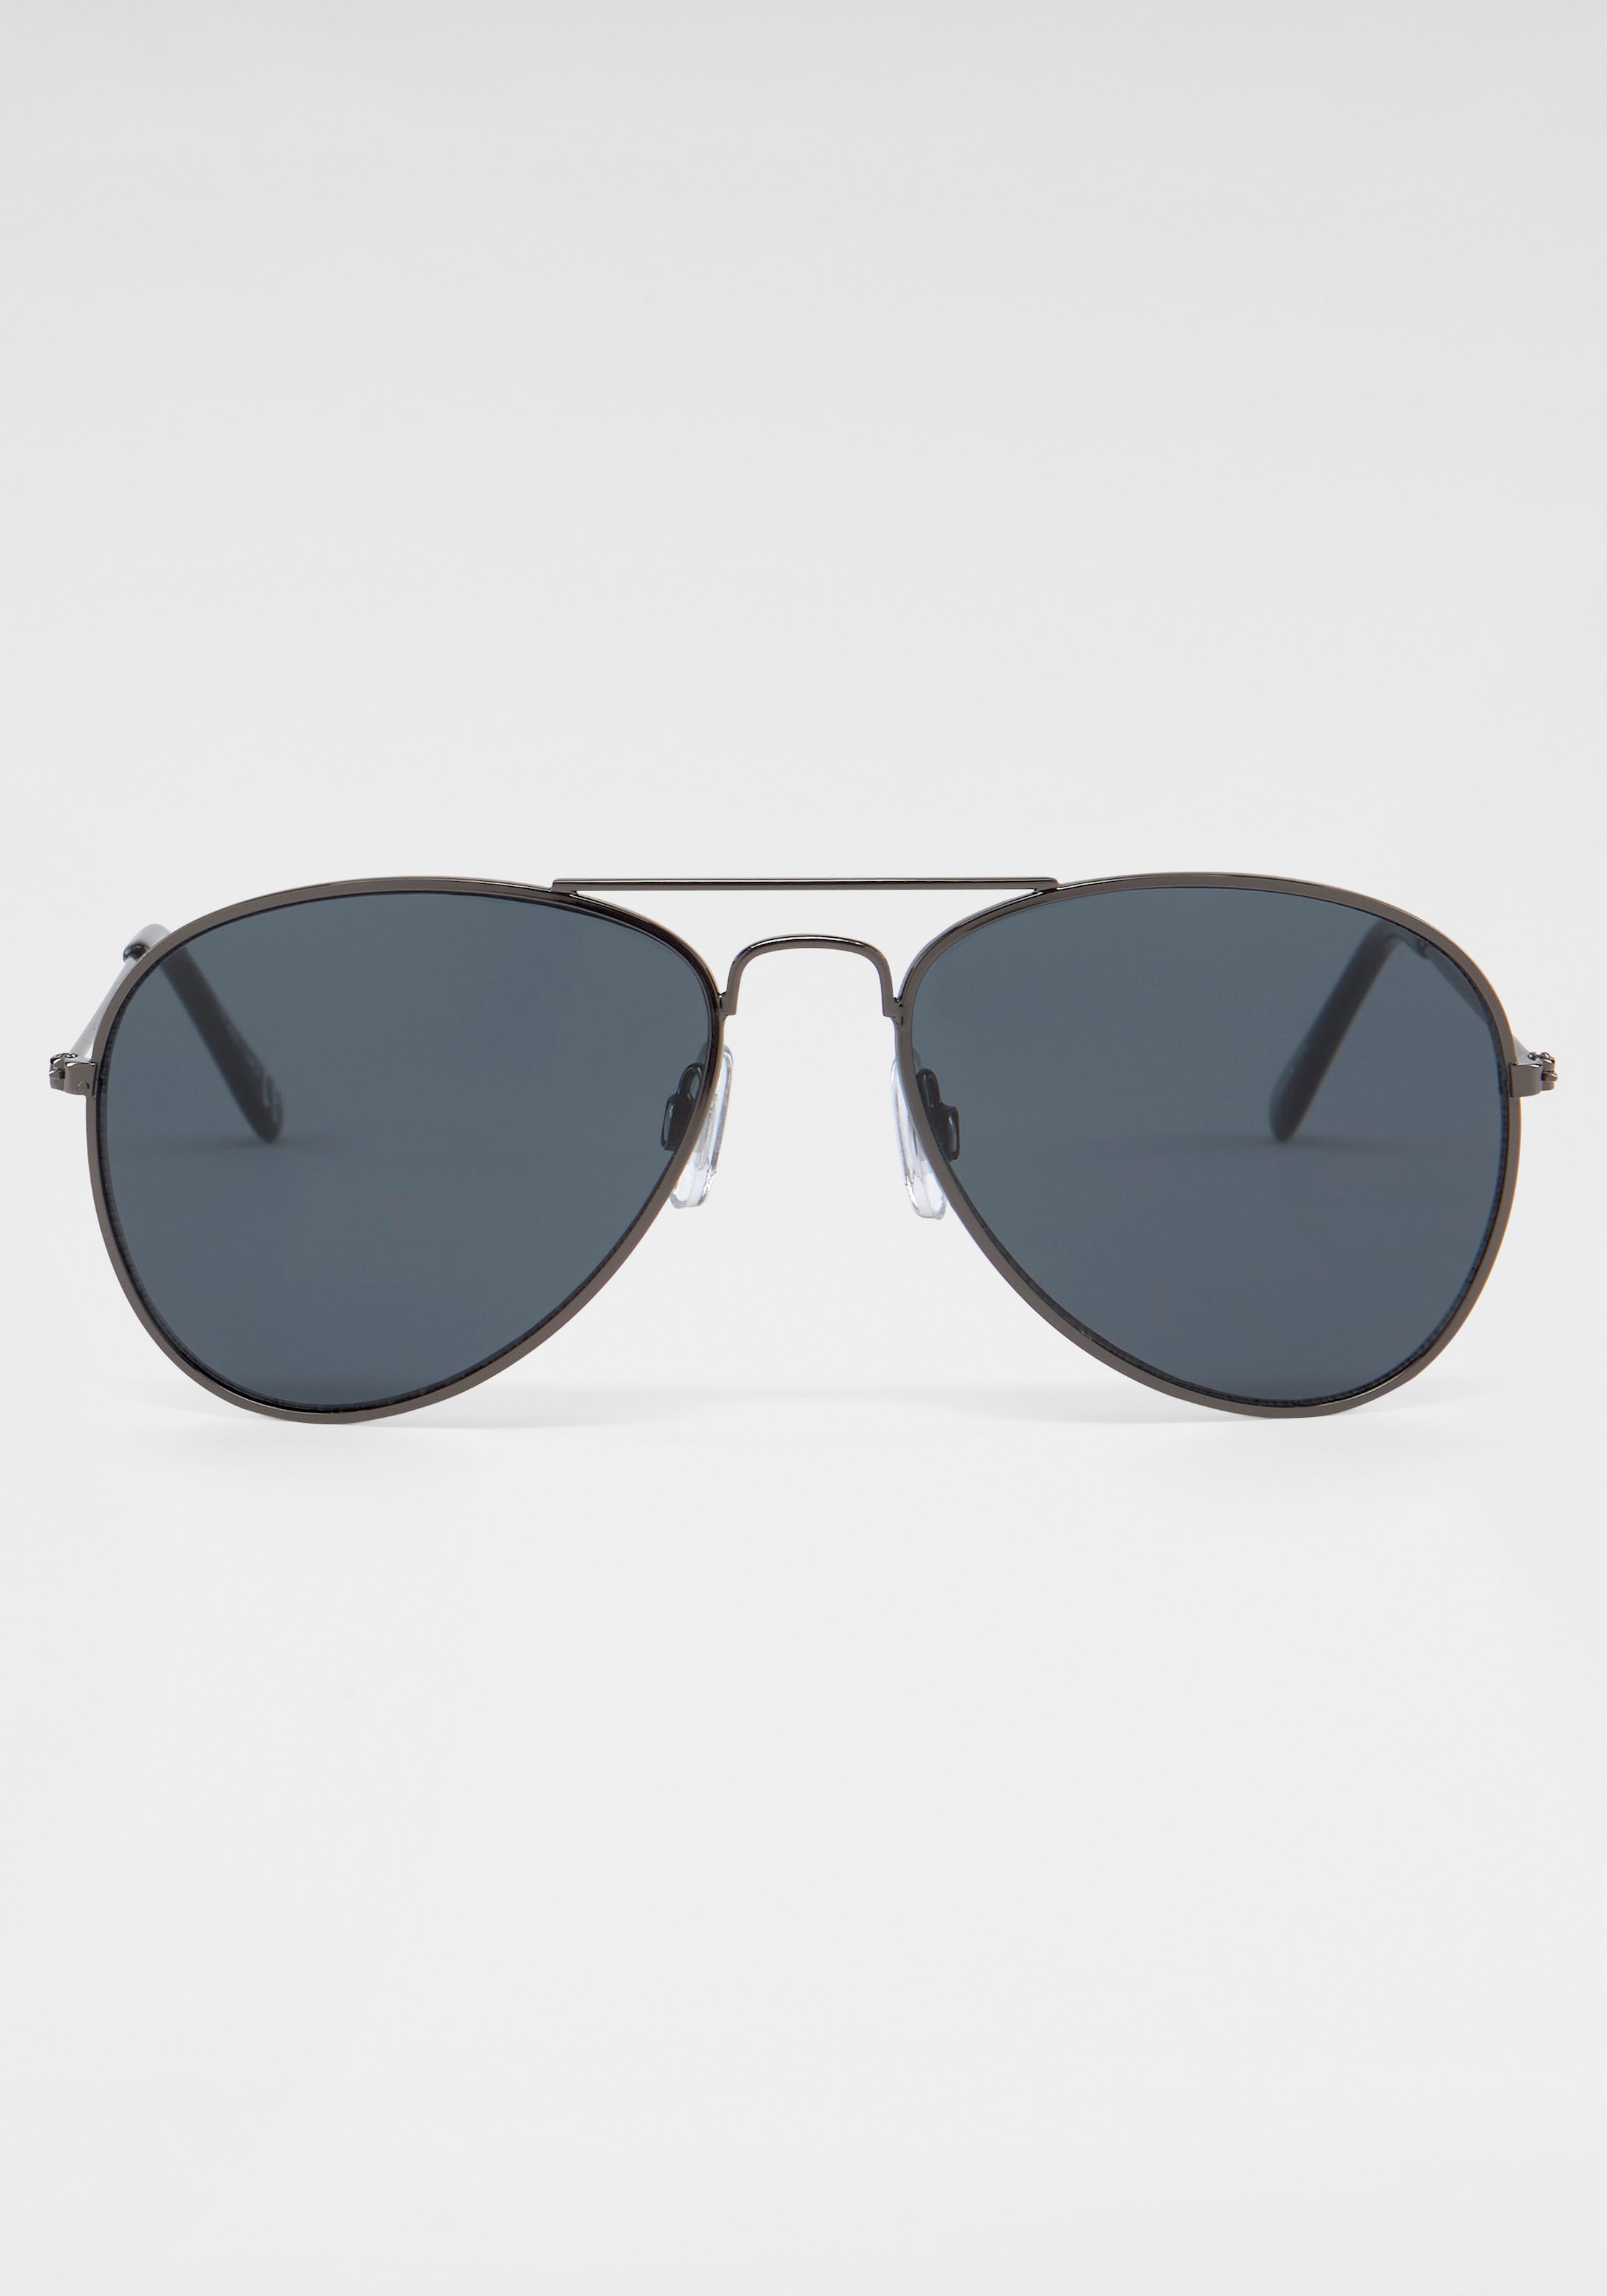 bestellen Sonnenbrille versandkostenfrei PRIMETTA Eyewear